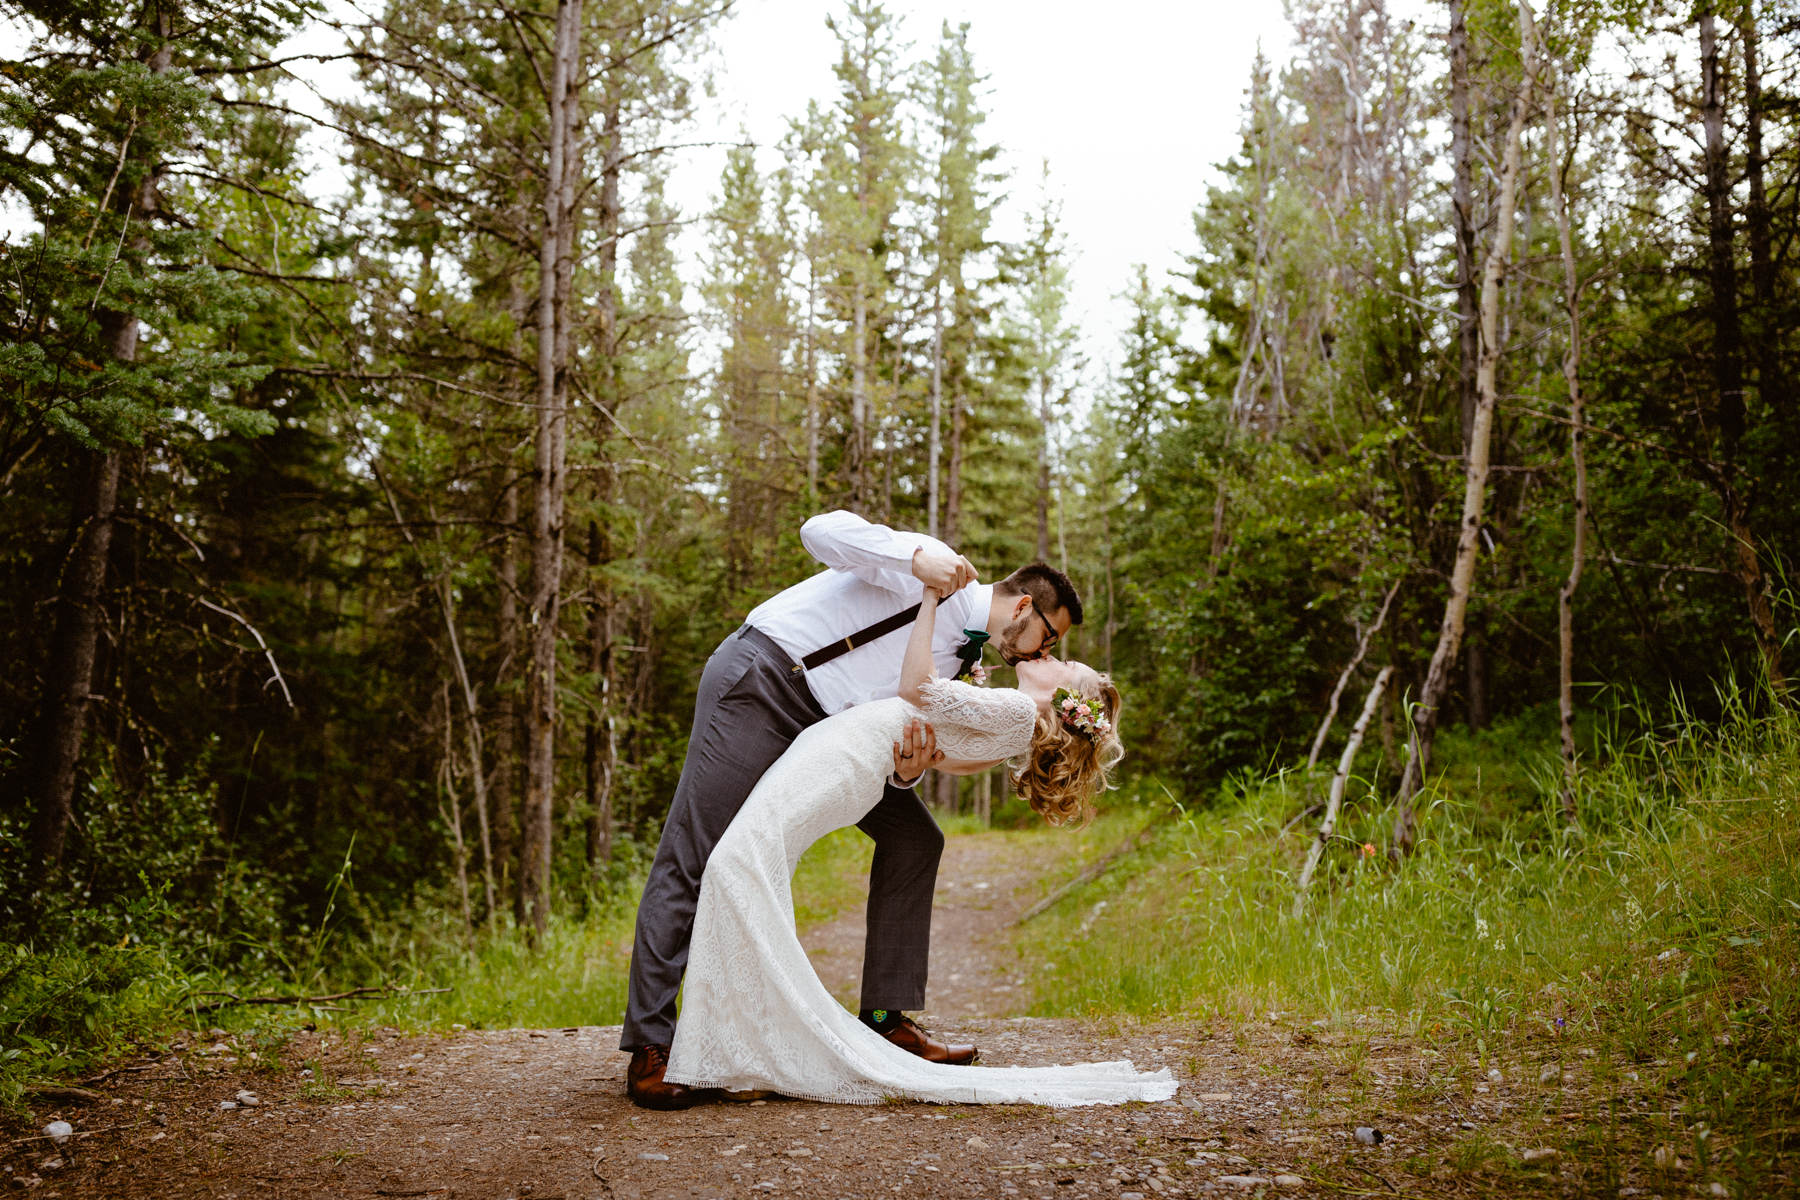 Kananaskis Wedding Photography at Pomeroy Mountain Lodge - Image  52